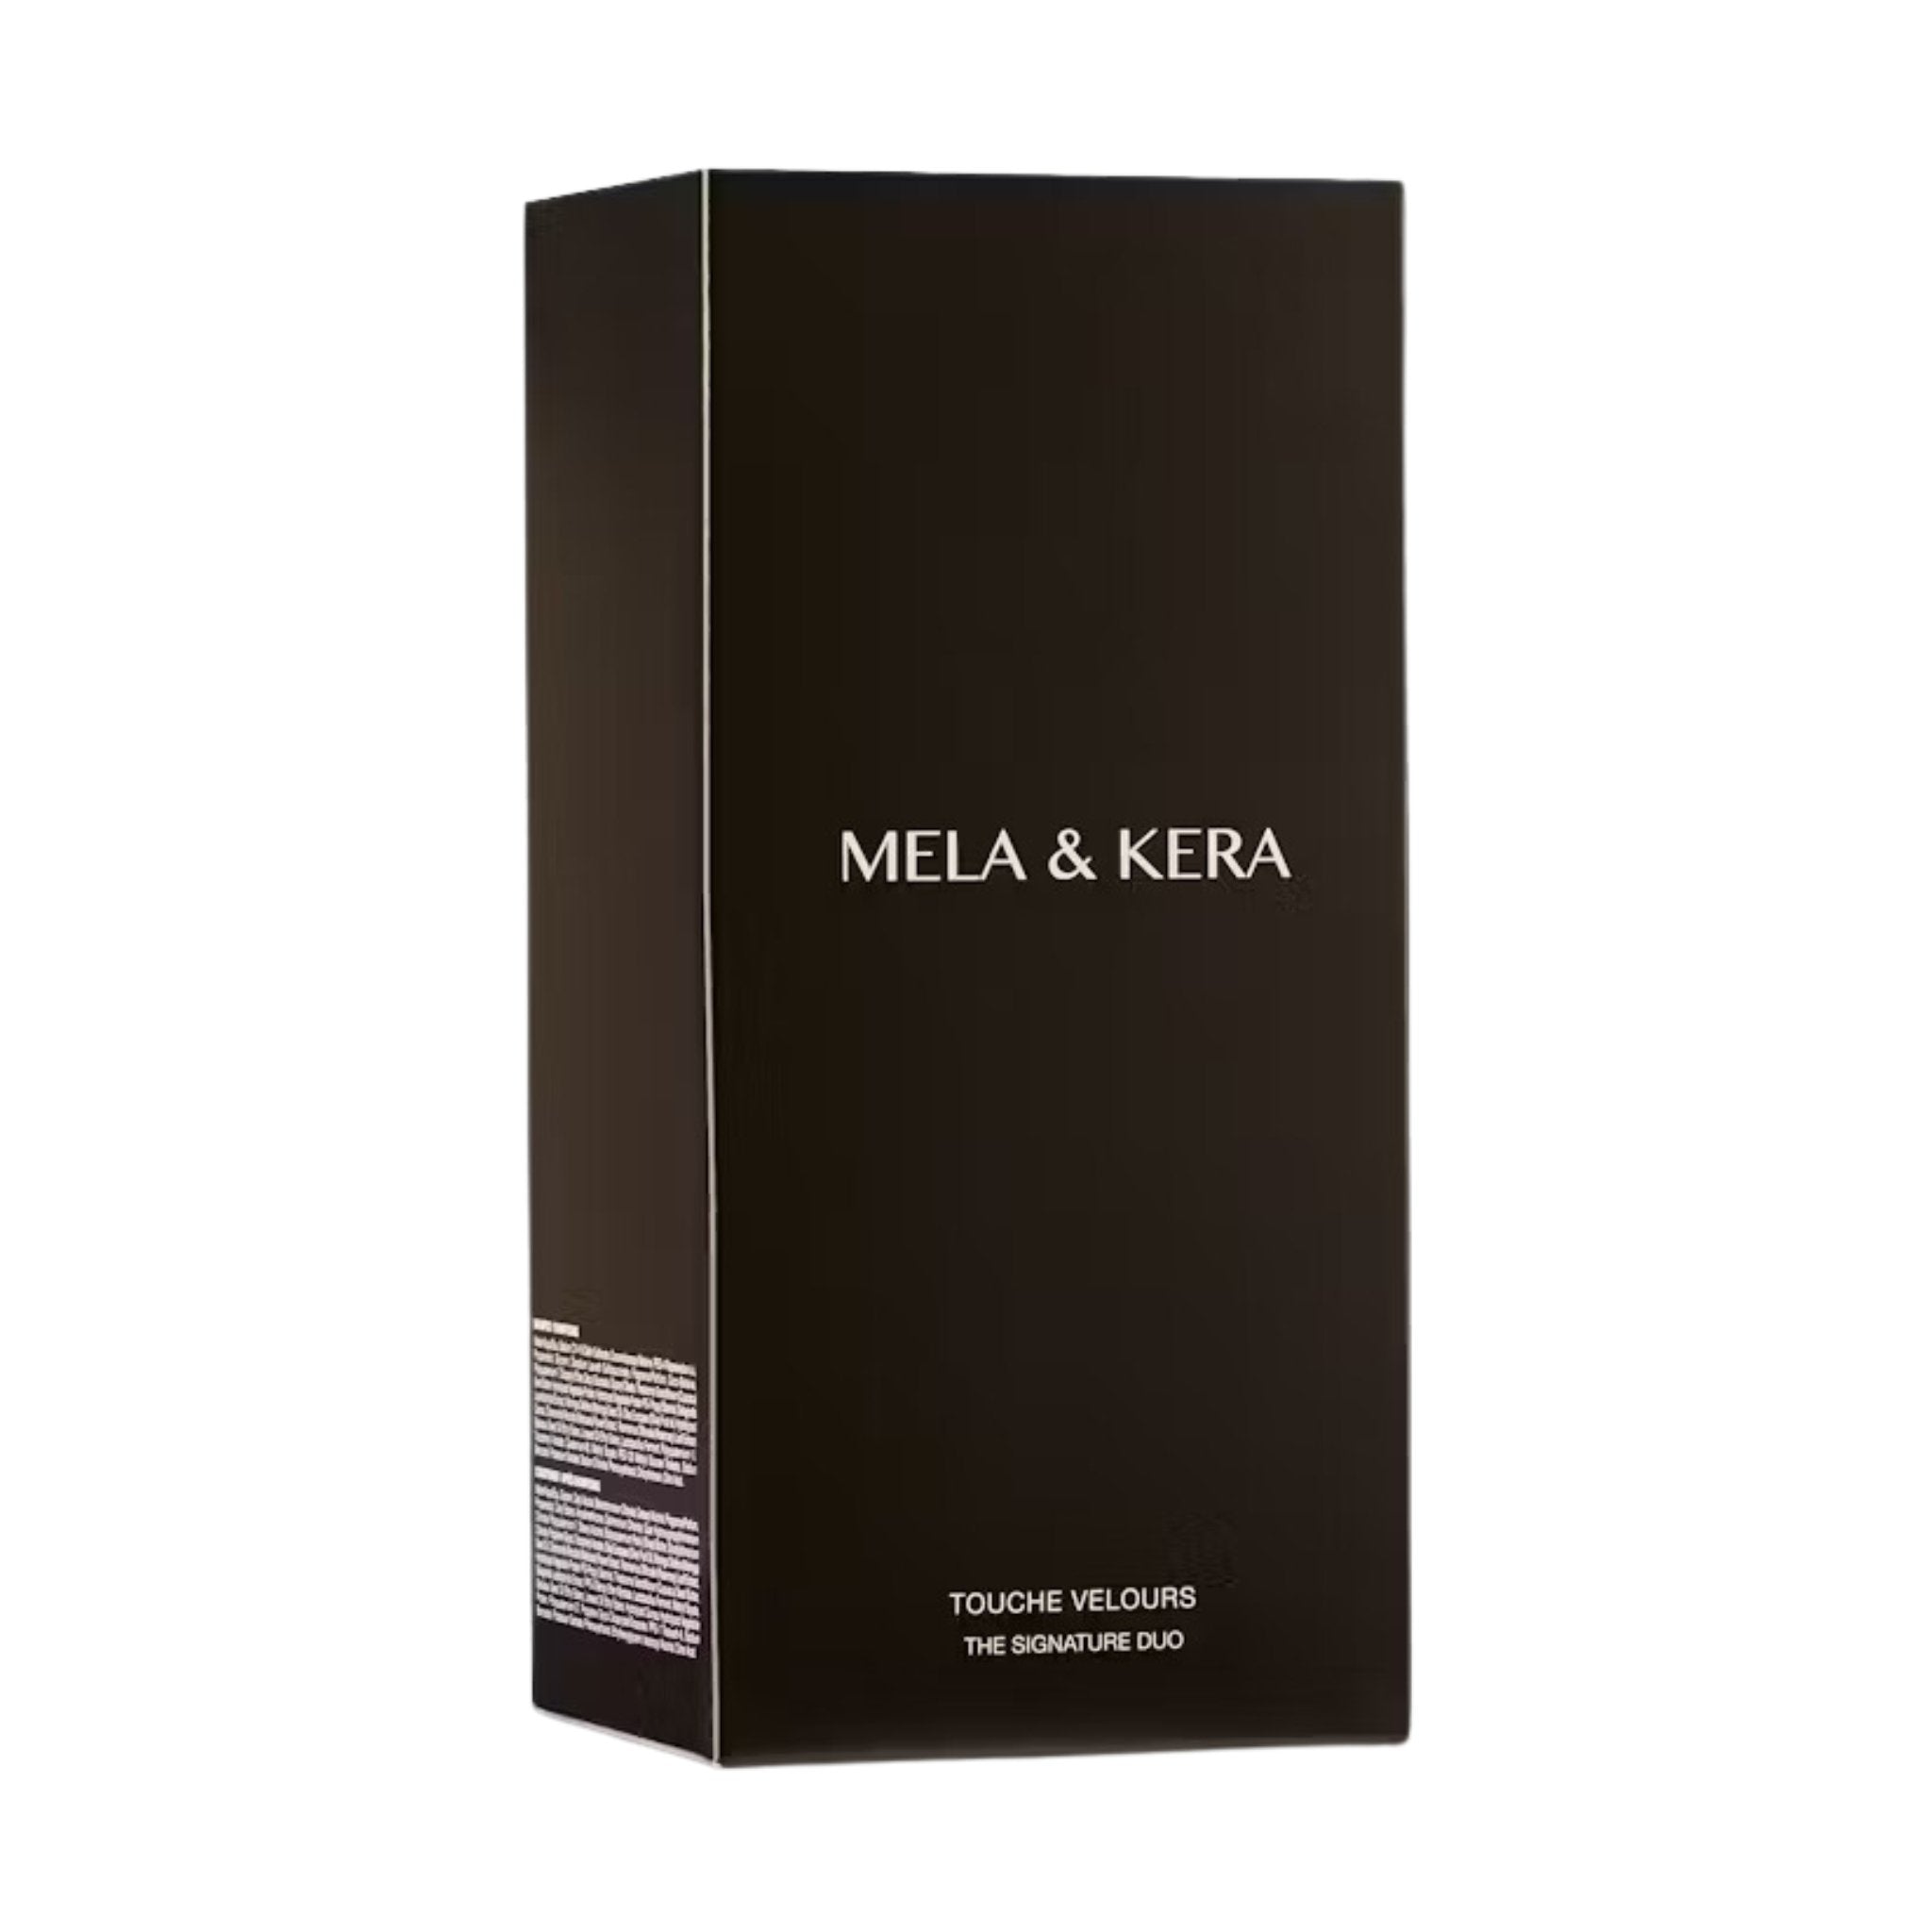 Mela & Kera. Touche Velours The Signature Collection - Concept C. Shop